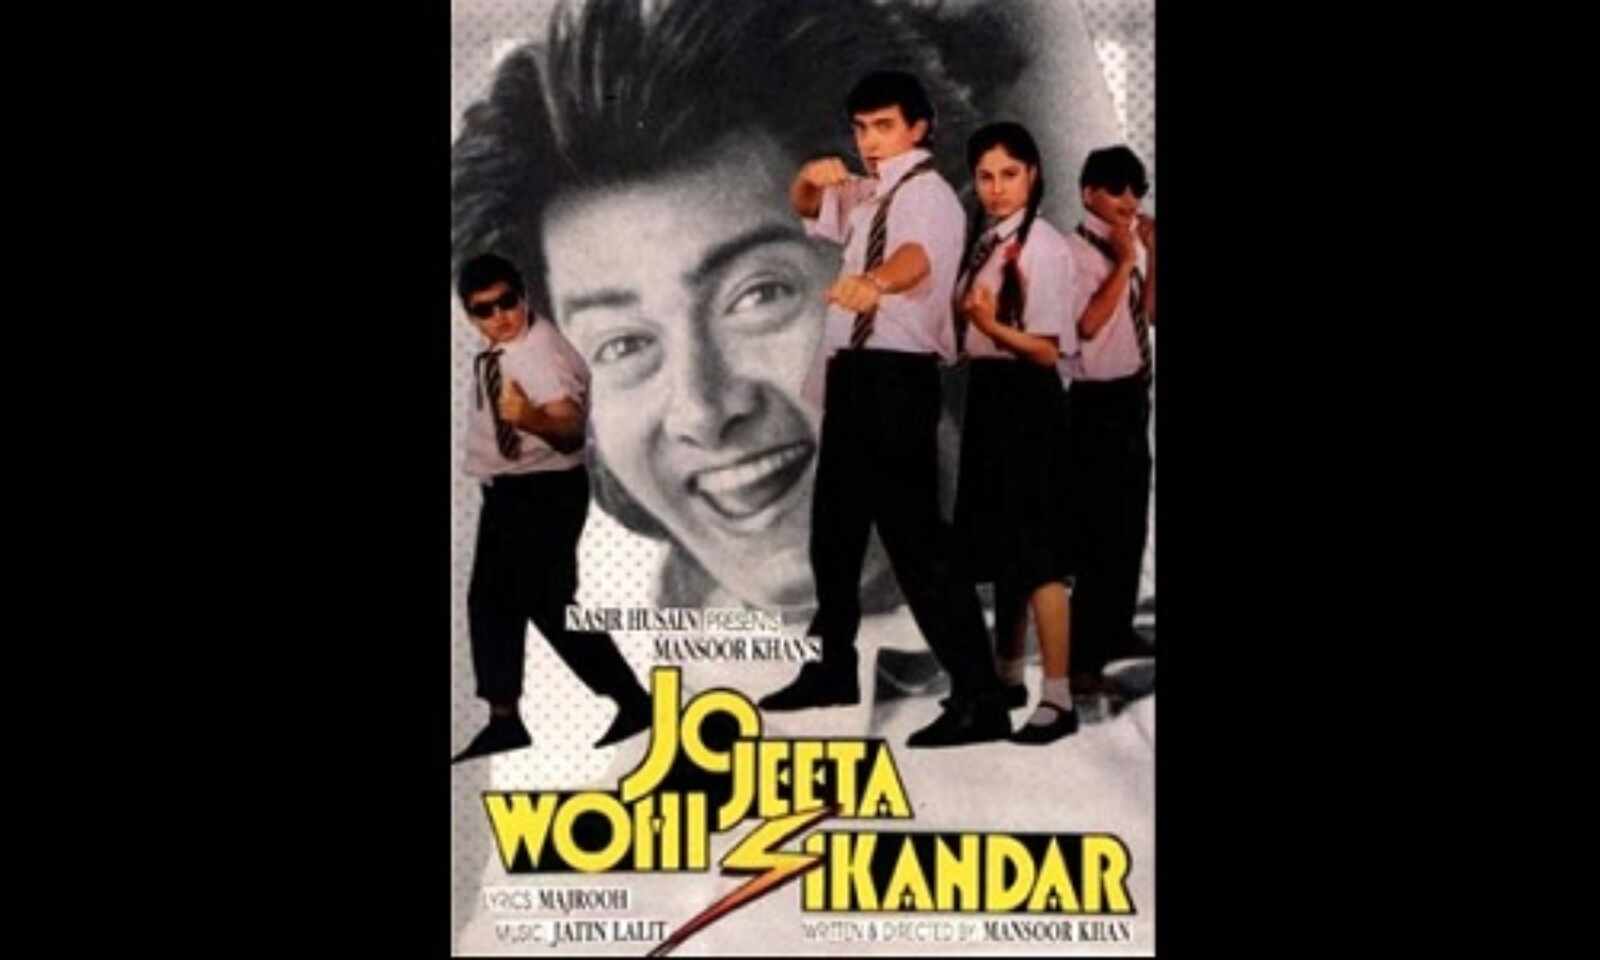 Looking Back On Jo Jeeta Wohi Sikandar 27 Years Later